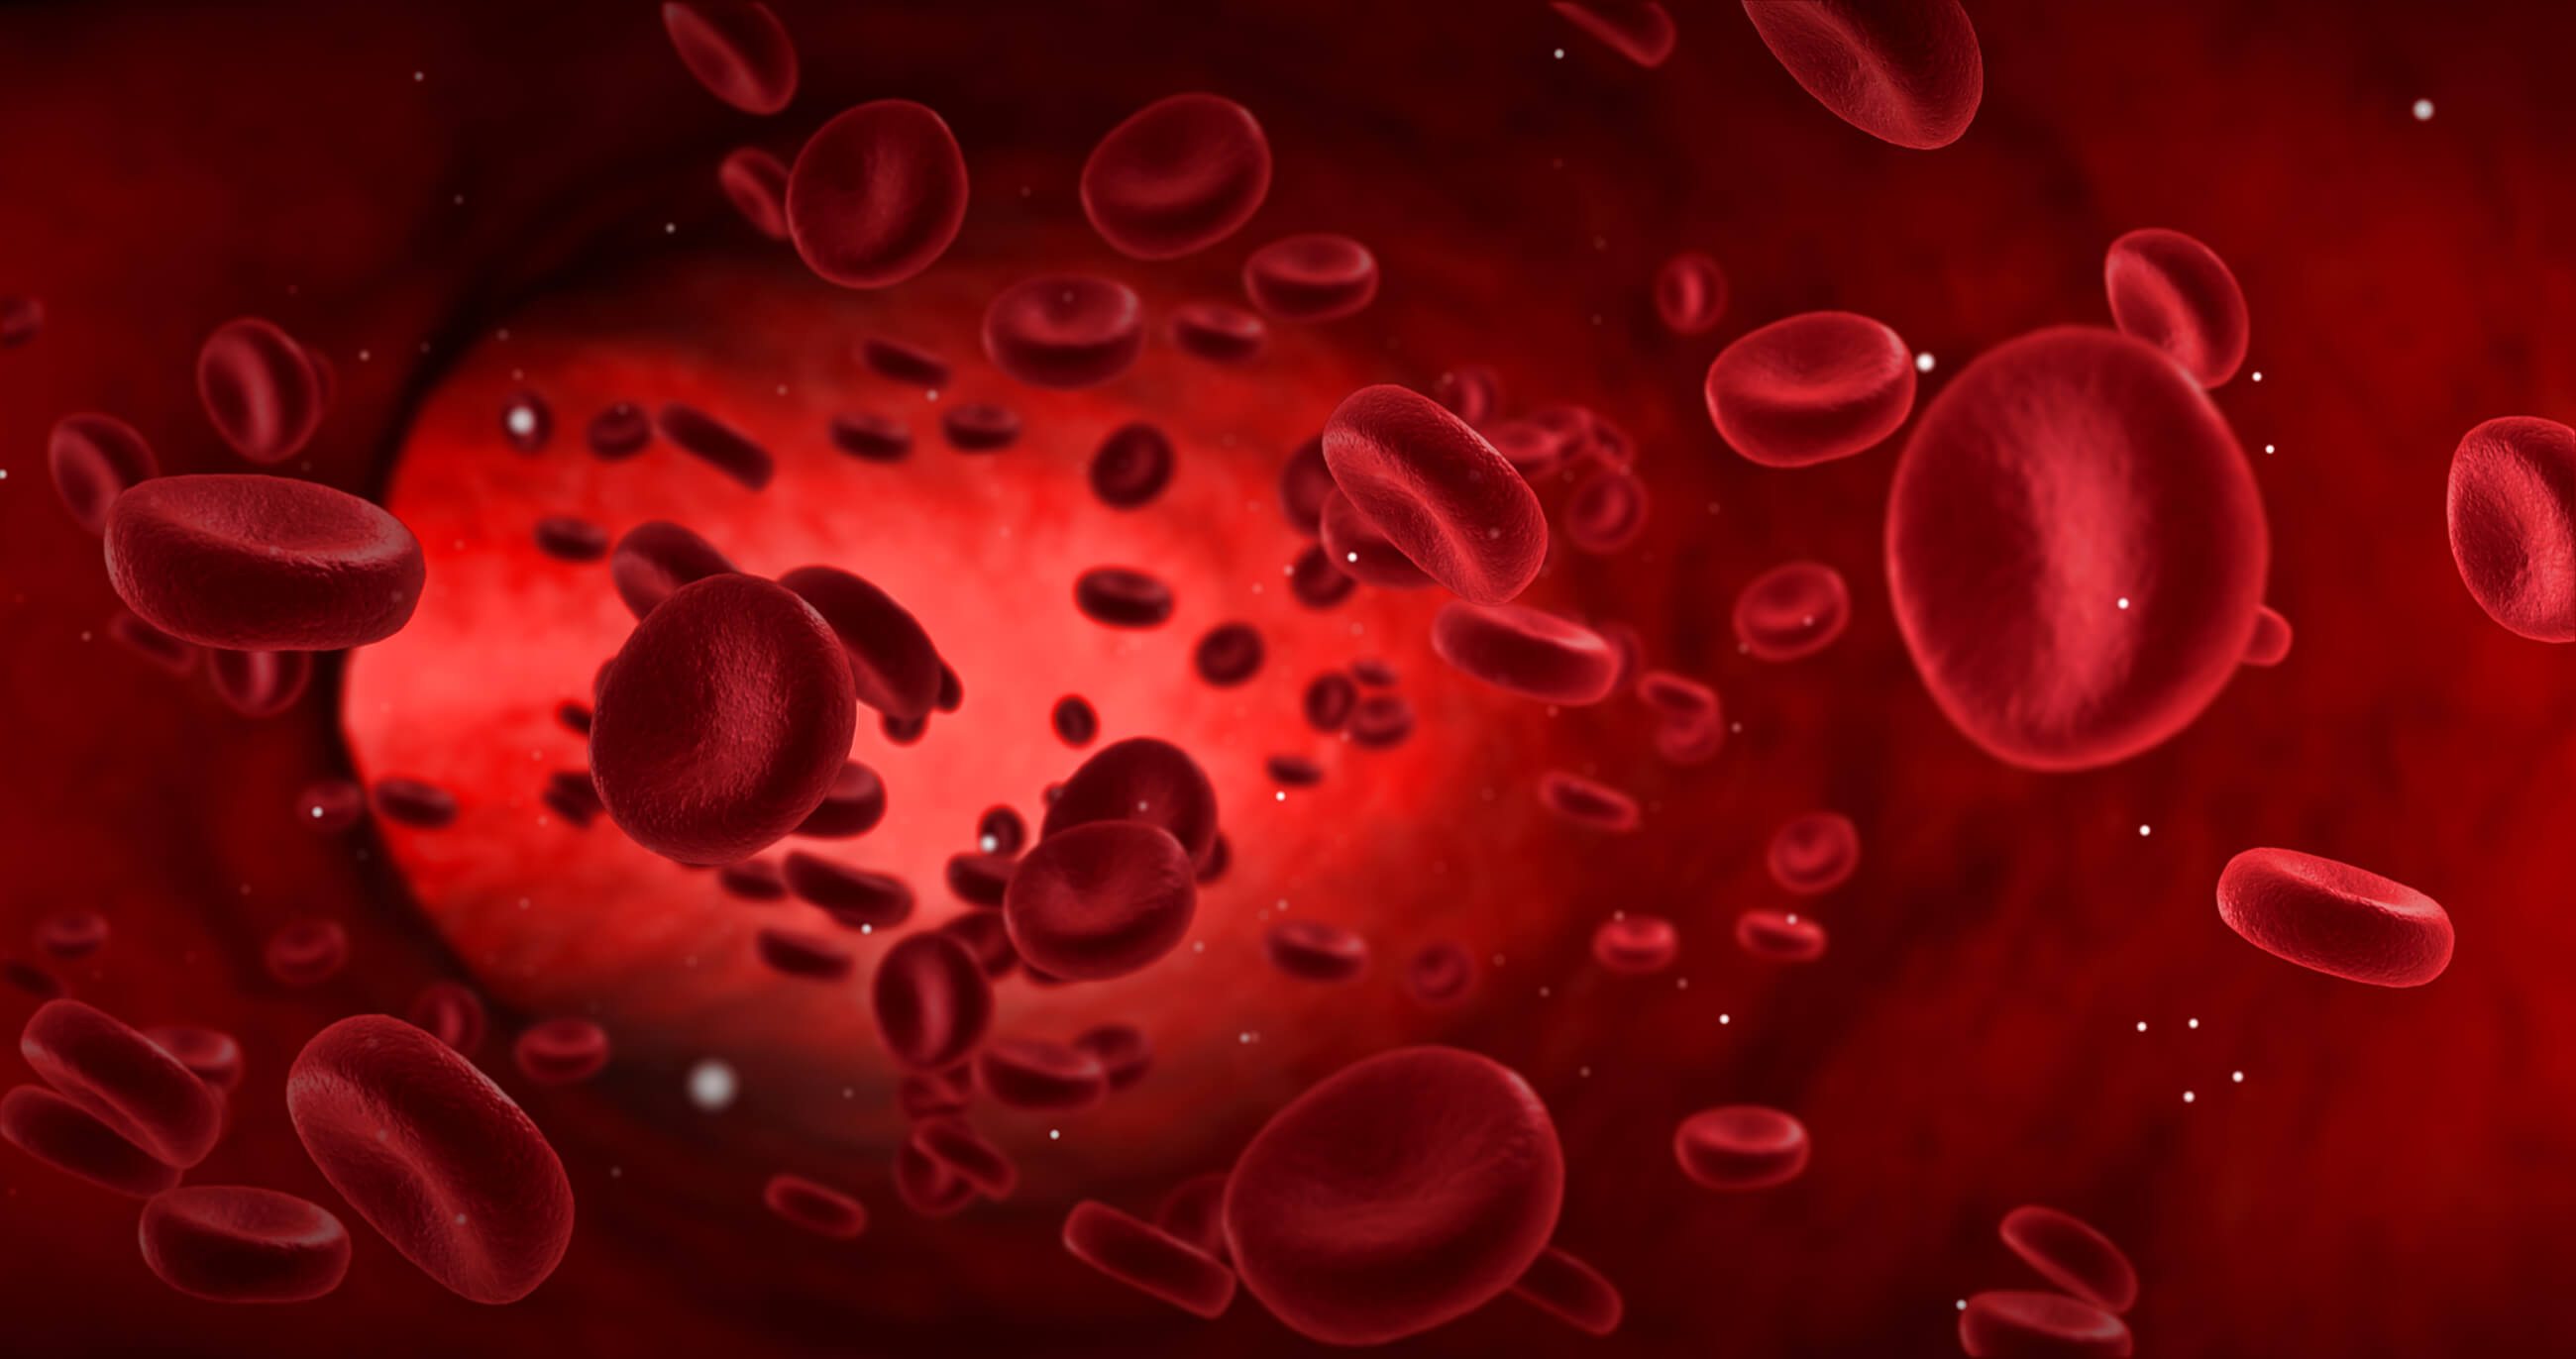 red-blood-cell-alloimmunisation-women-s-health-fact-sheet